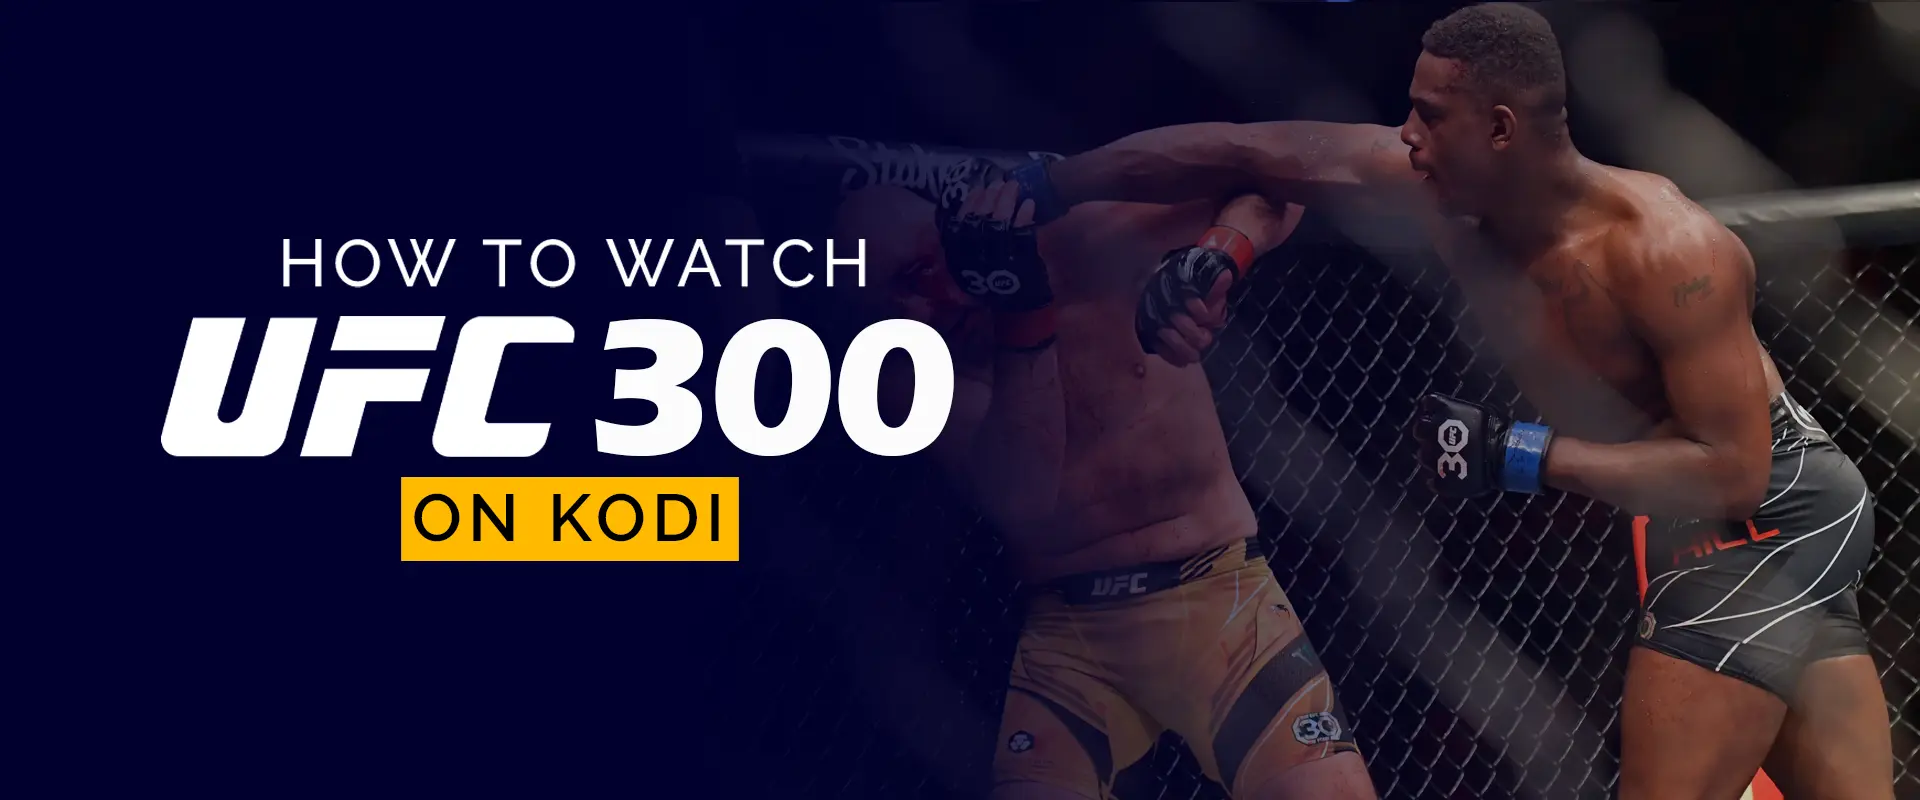 How to Watch UFC 300 on Kodi